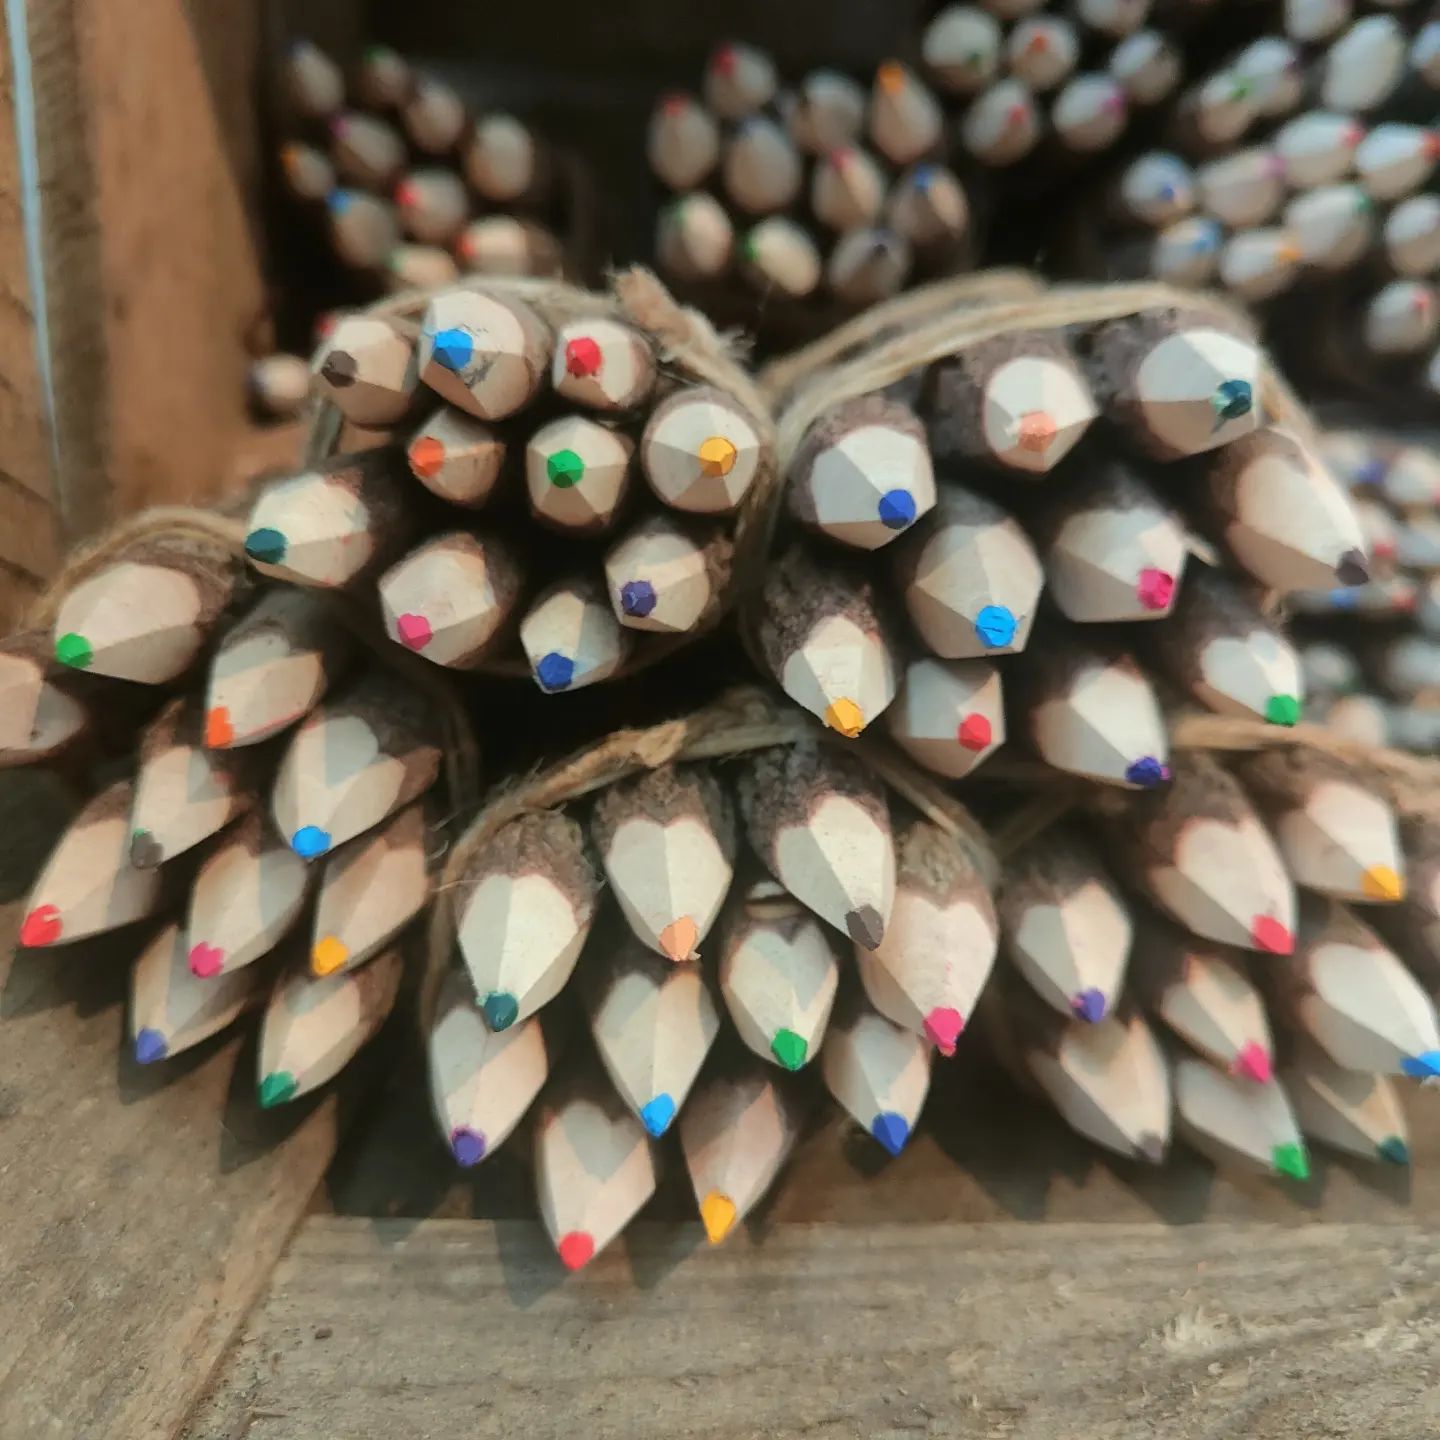 De boomstam potloden blijven jullie favoriet! 🪵😍

Vandaag hebben we dan ook weer veel 'kleine' klanten blij mogen maken met deze prachtige handgemaakte, Fairtrade potloden. 🌳✏️

#madewhitlove 💚